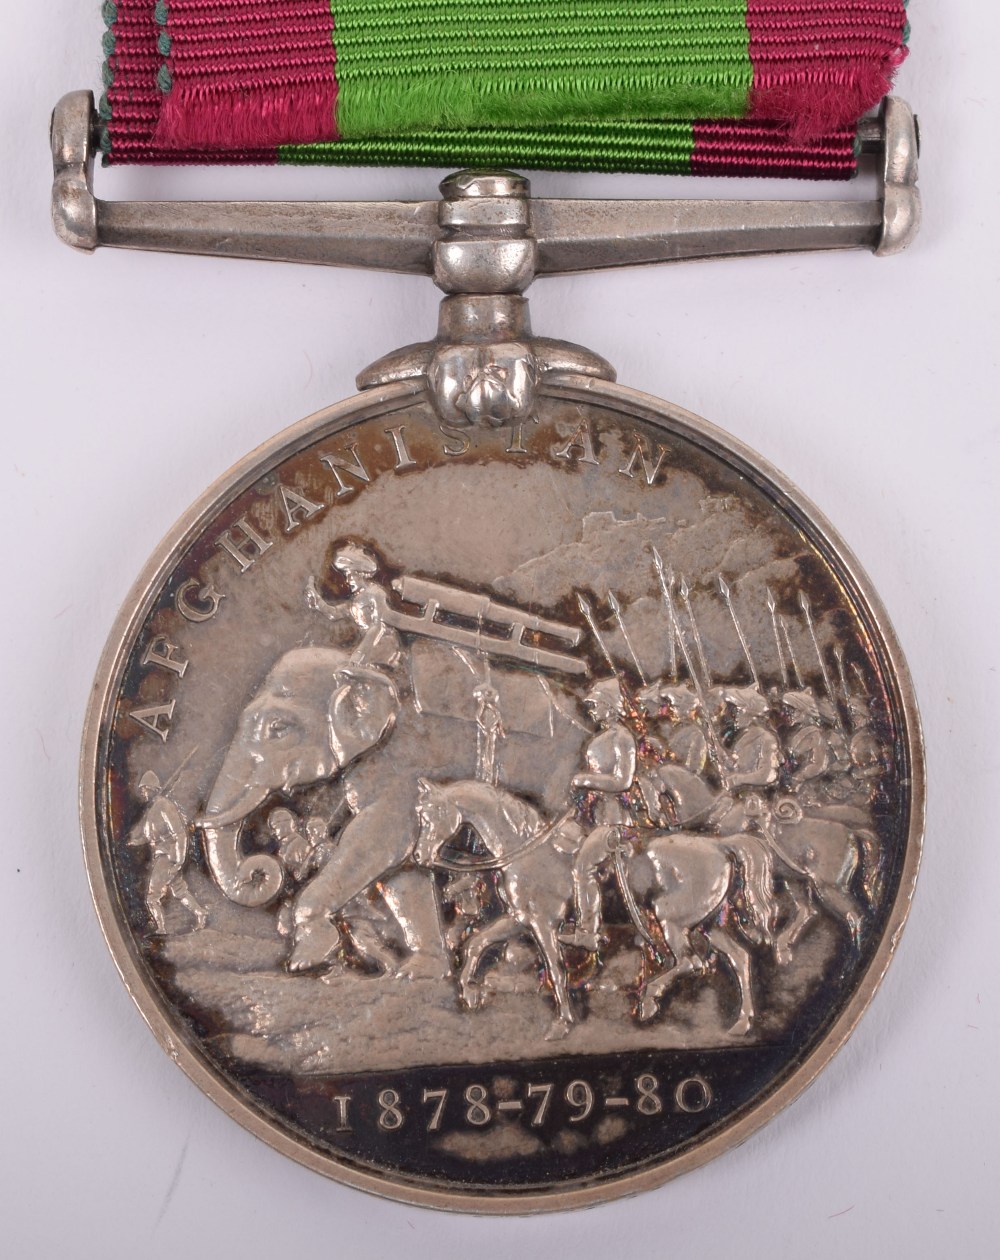 Afghanistan 1878-80 Medal Royal Artillery - Image 6 of 6